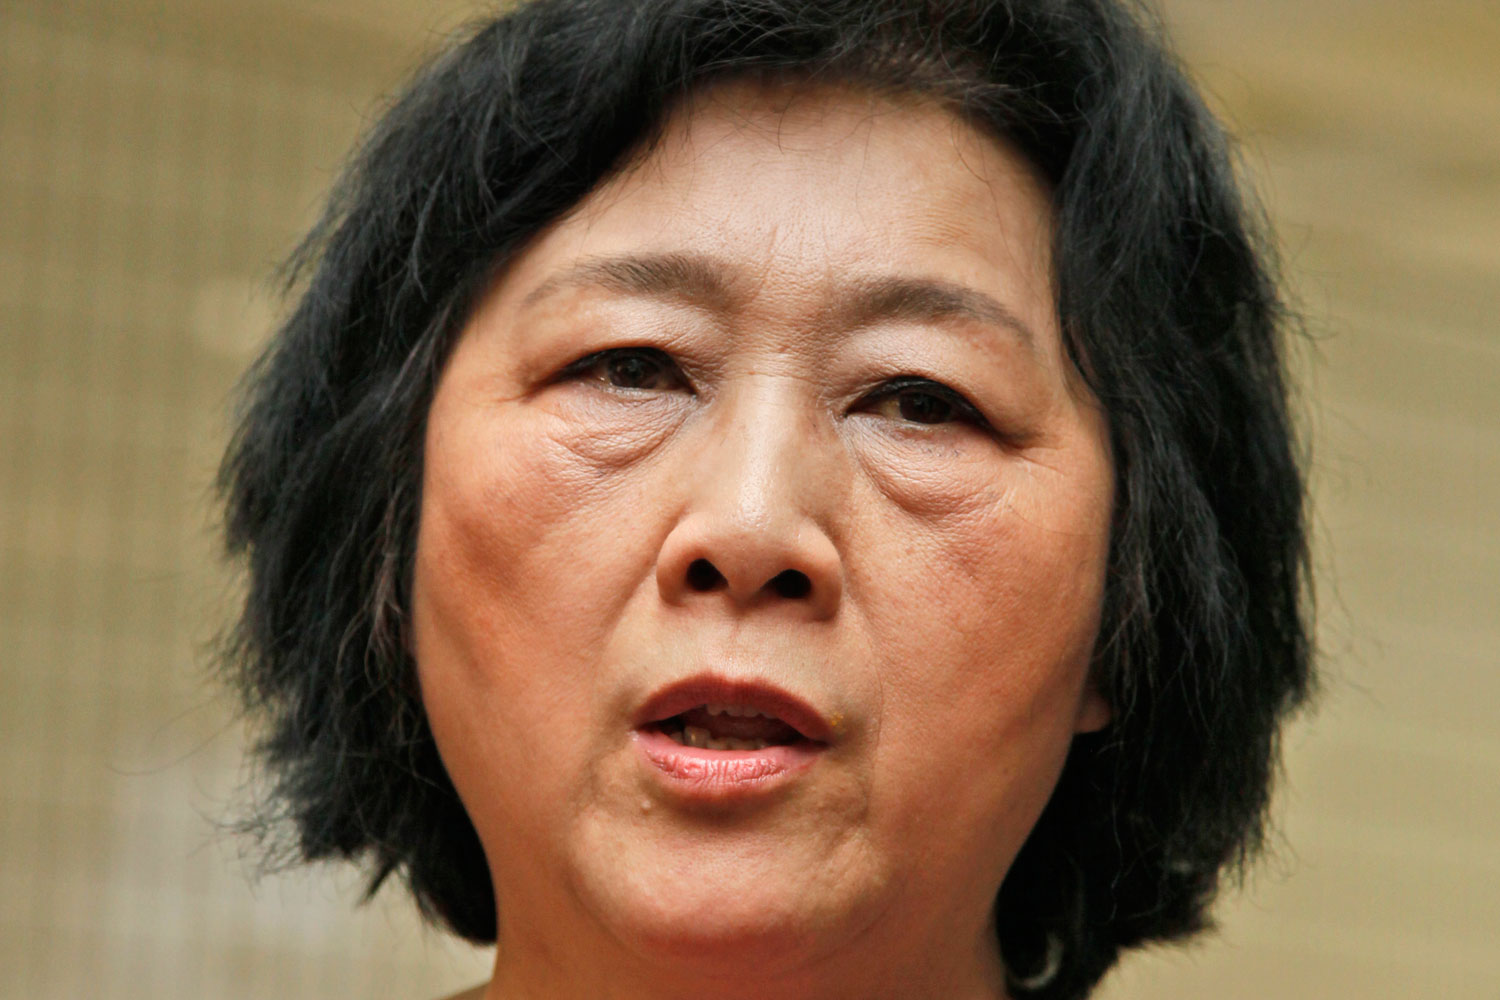 Chinese journalist Gao Yu